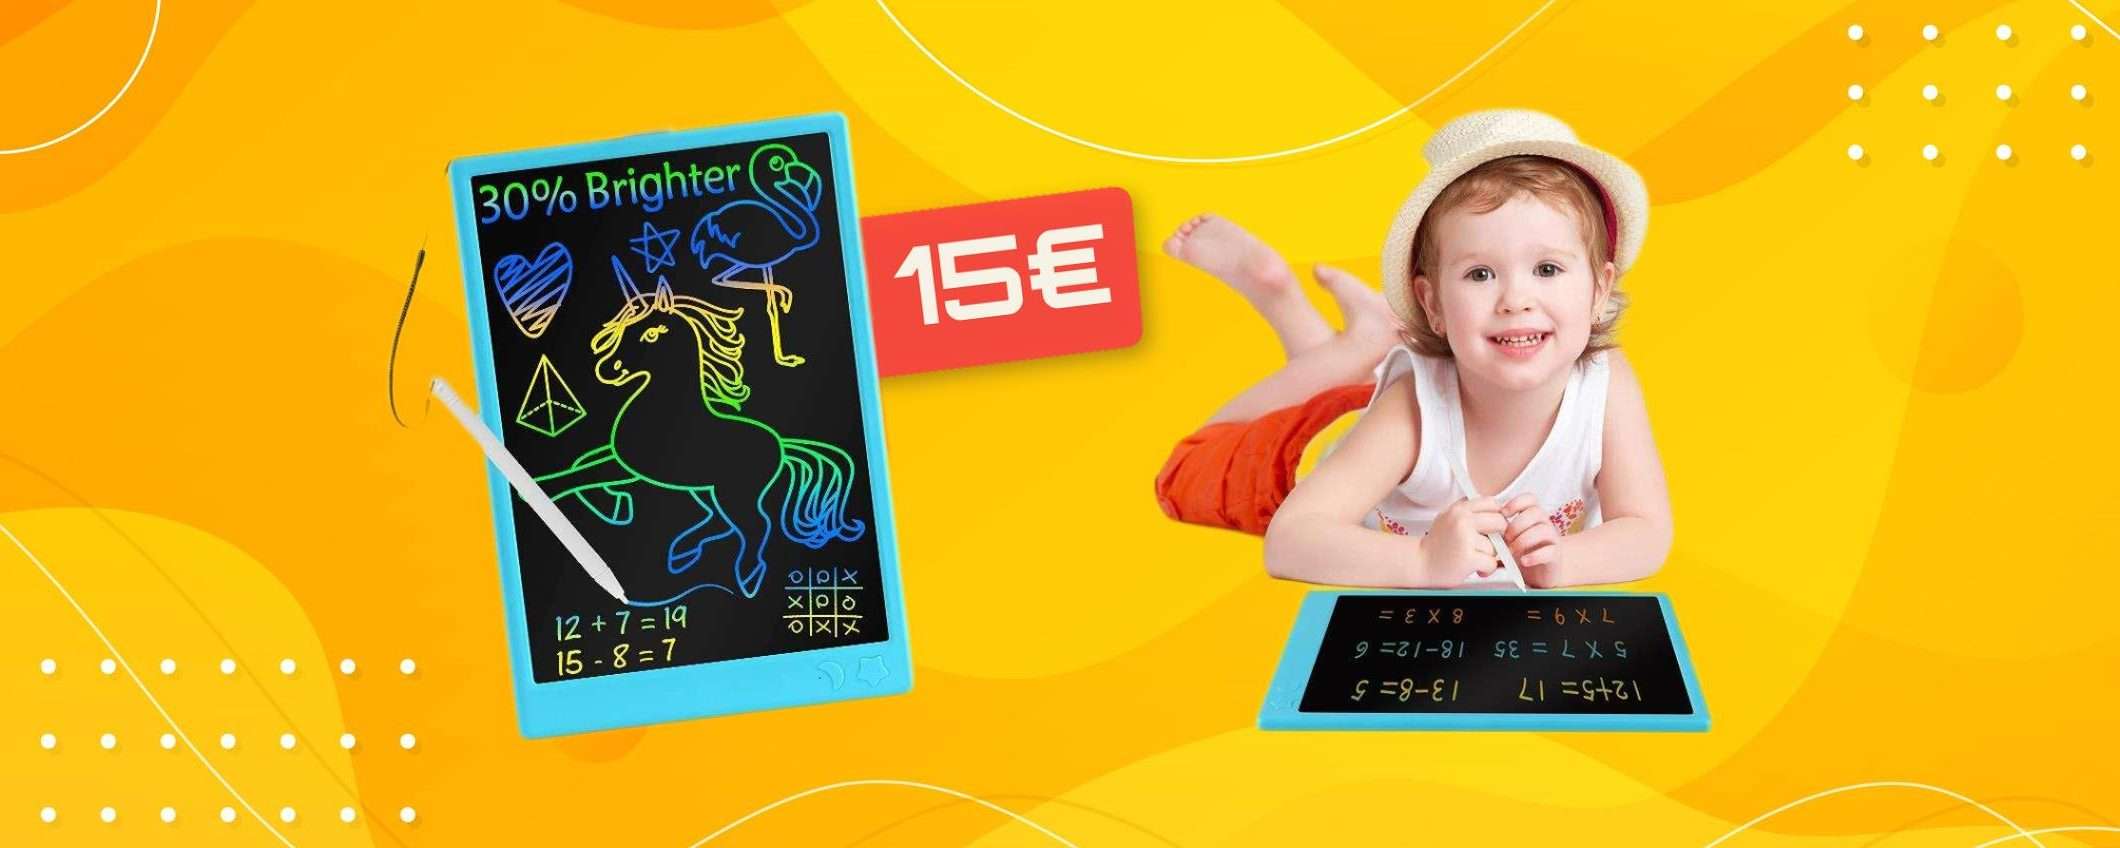 Lavagna LCD, un regalo di Natale che i bambini adoreranno: solo 15€